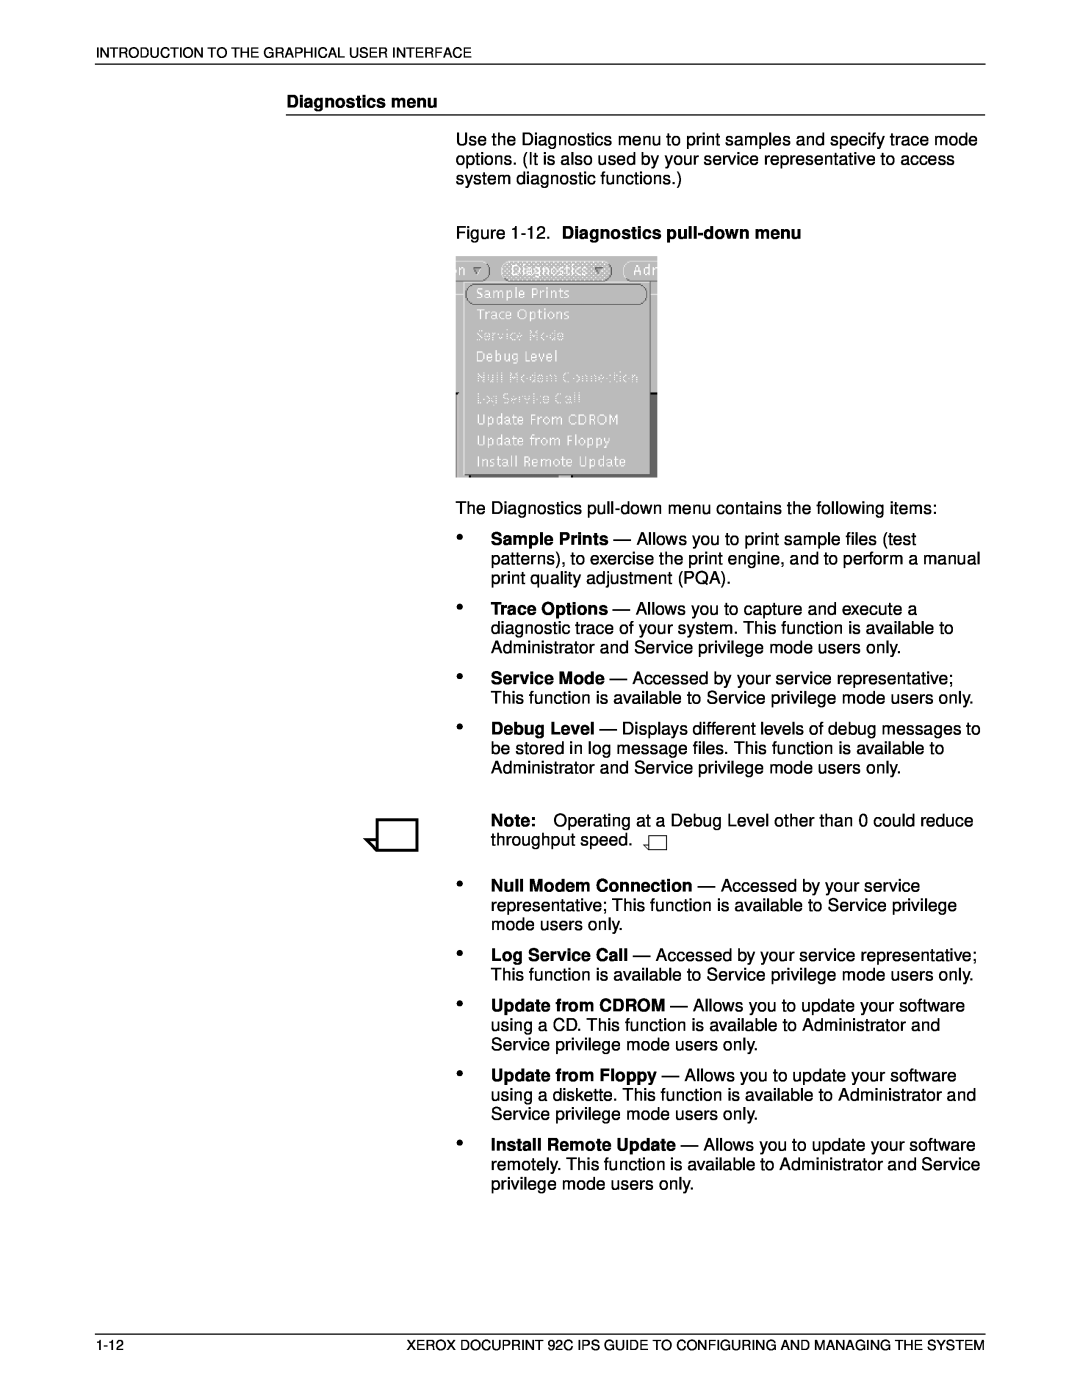 Xerox 92C IPS manual Diagnostics menu, 12. Diagnostics pull-down menu 